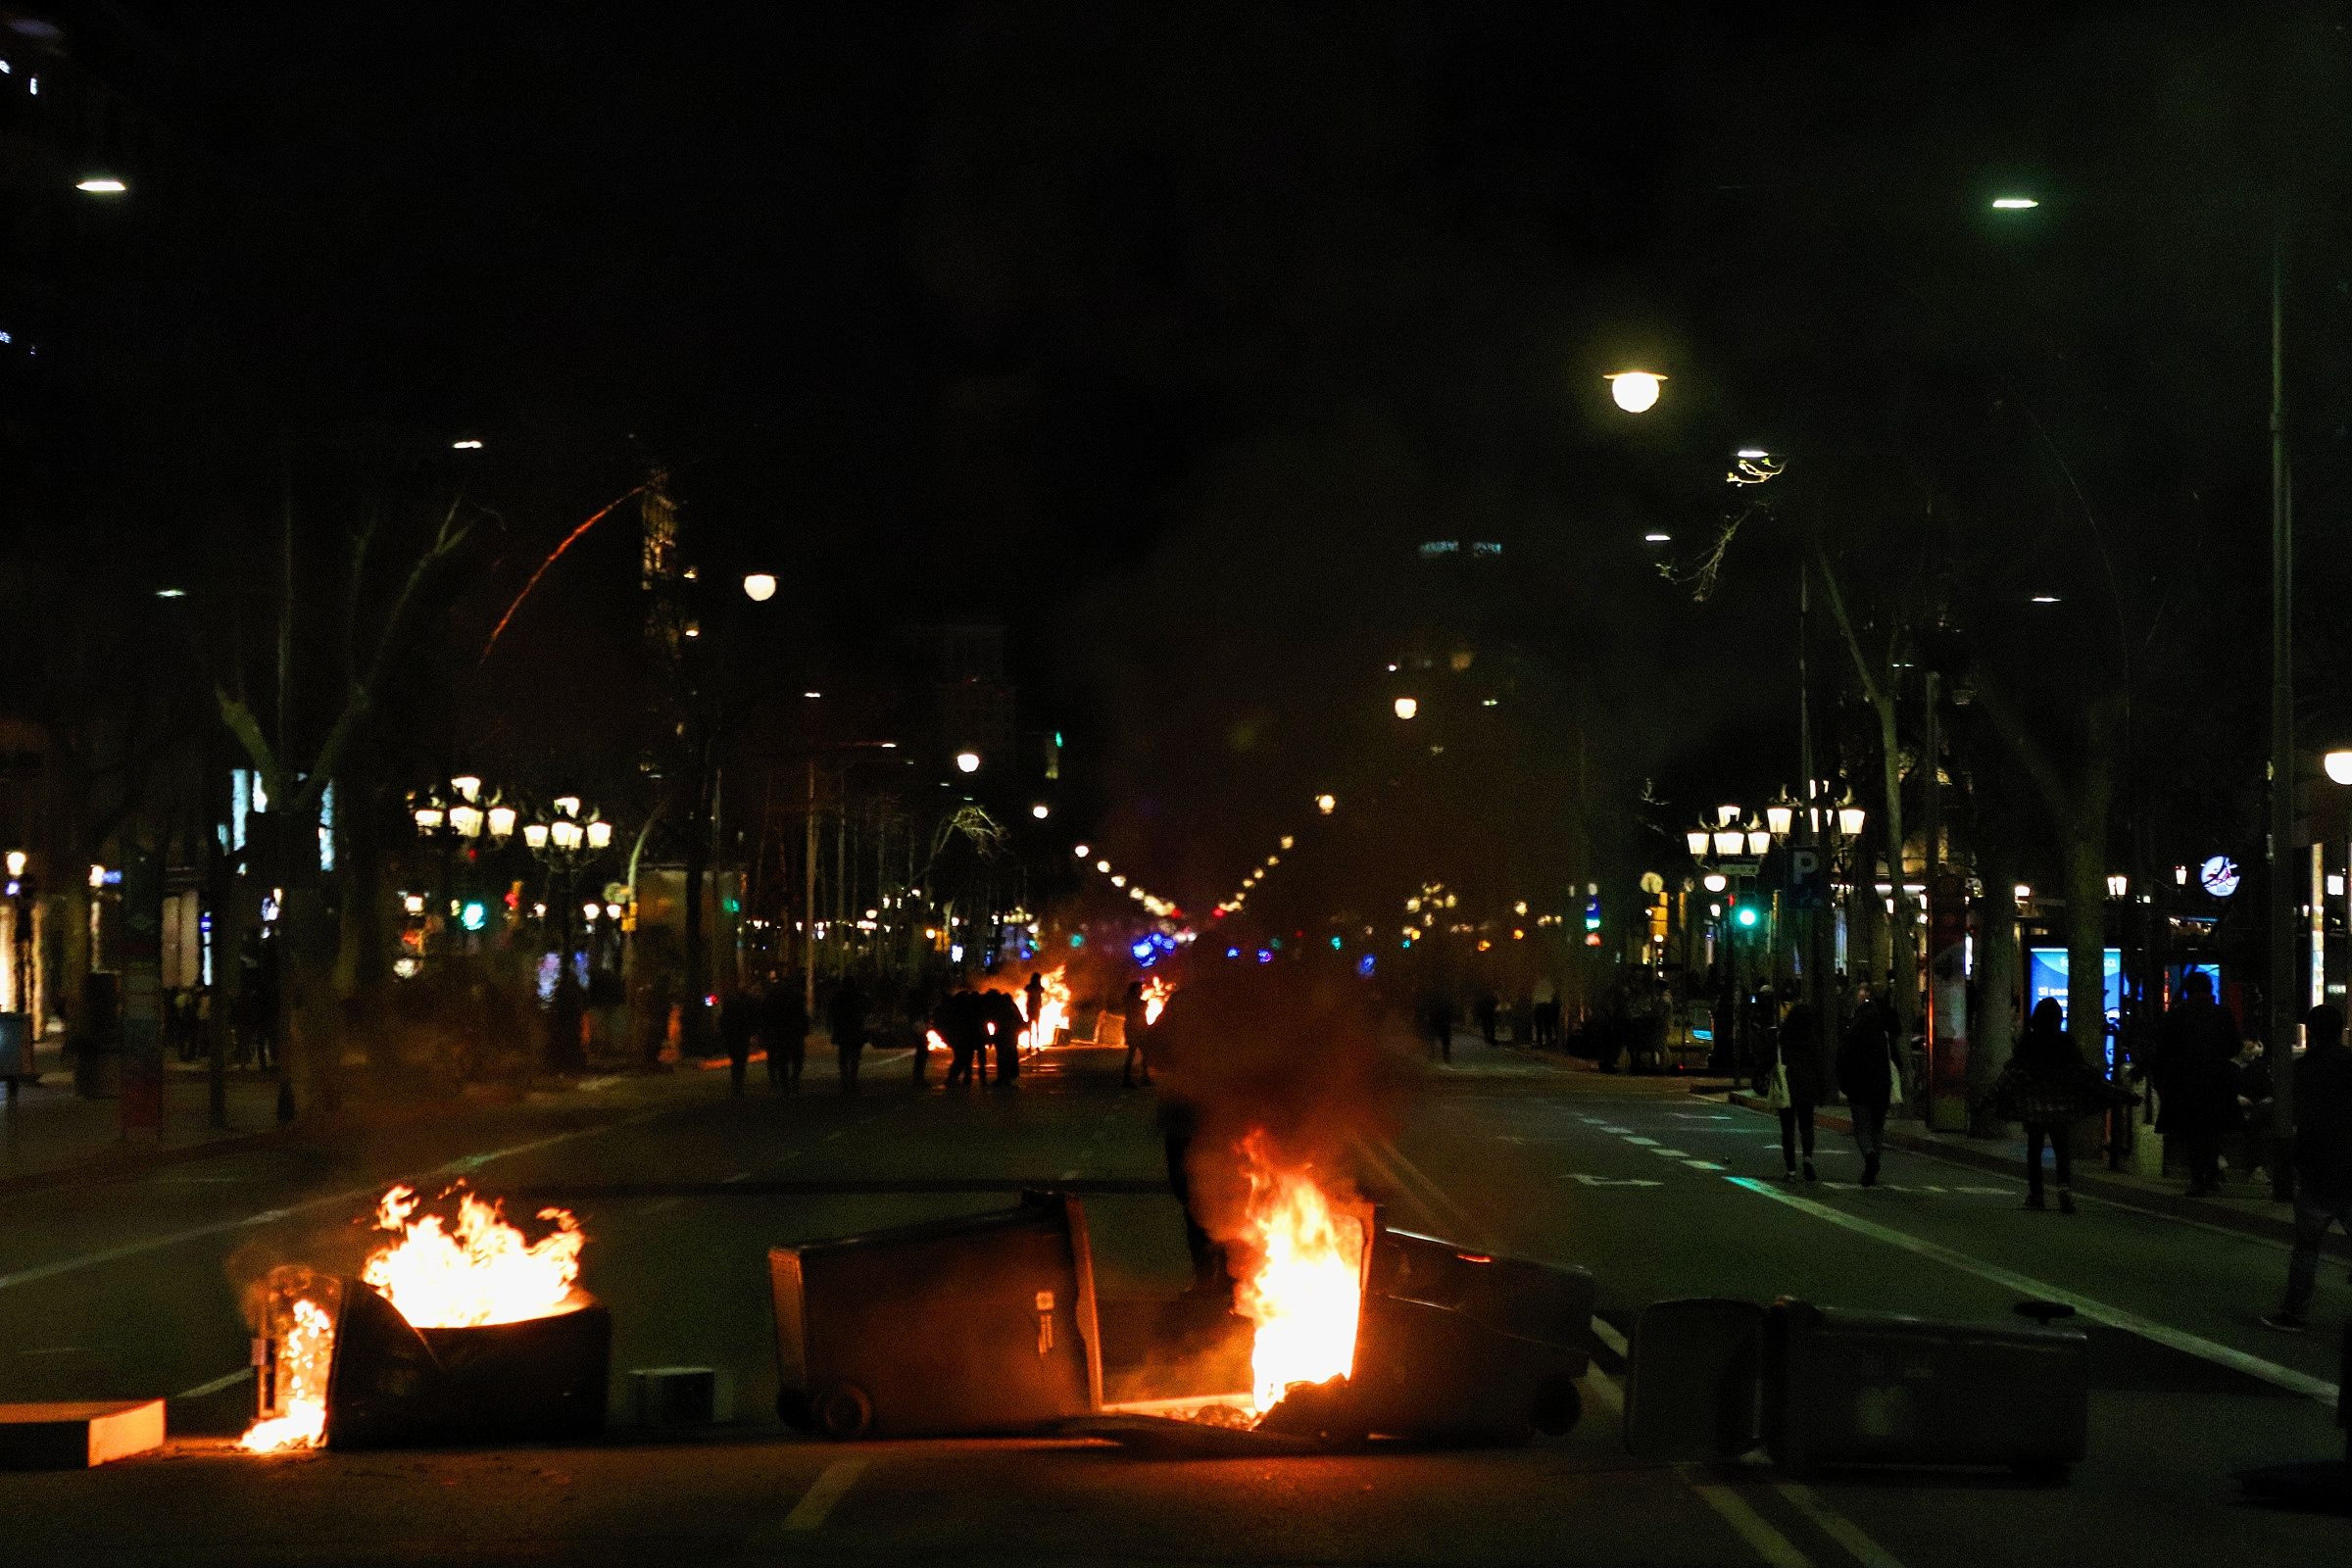 Contenedores ardiendo en el paseo de Gràcia por los disturbios en apoyo a Hasél / E.G.